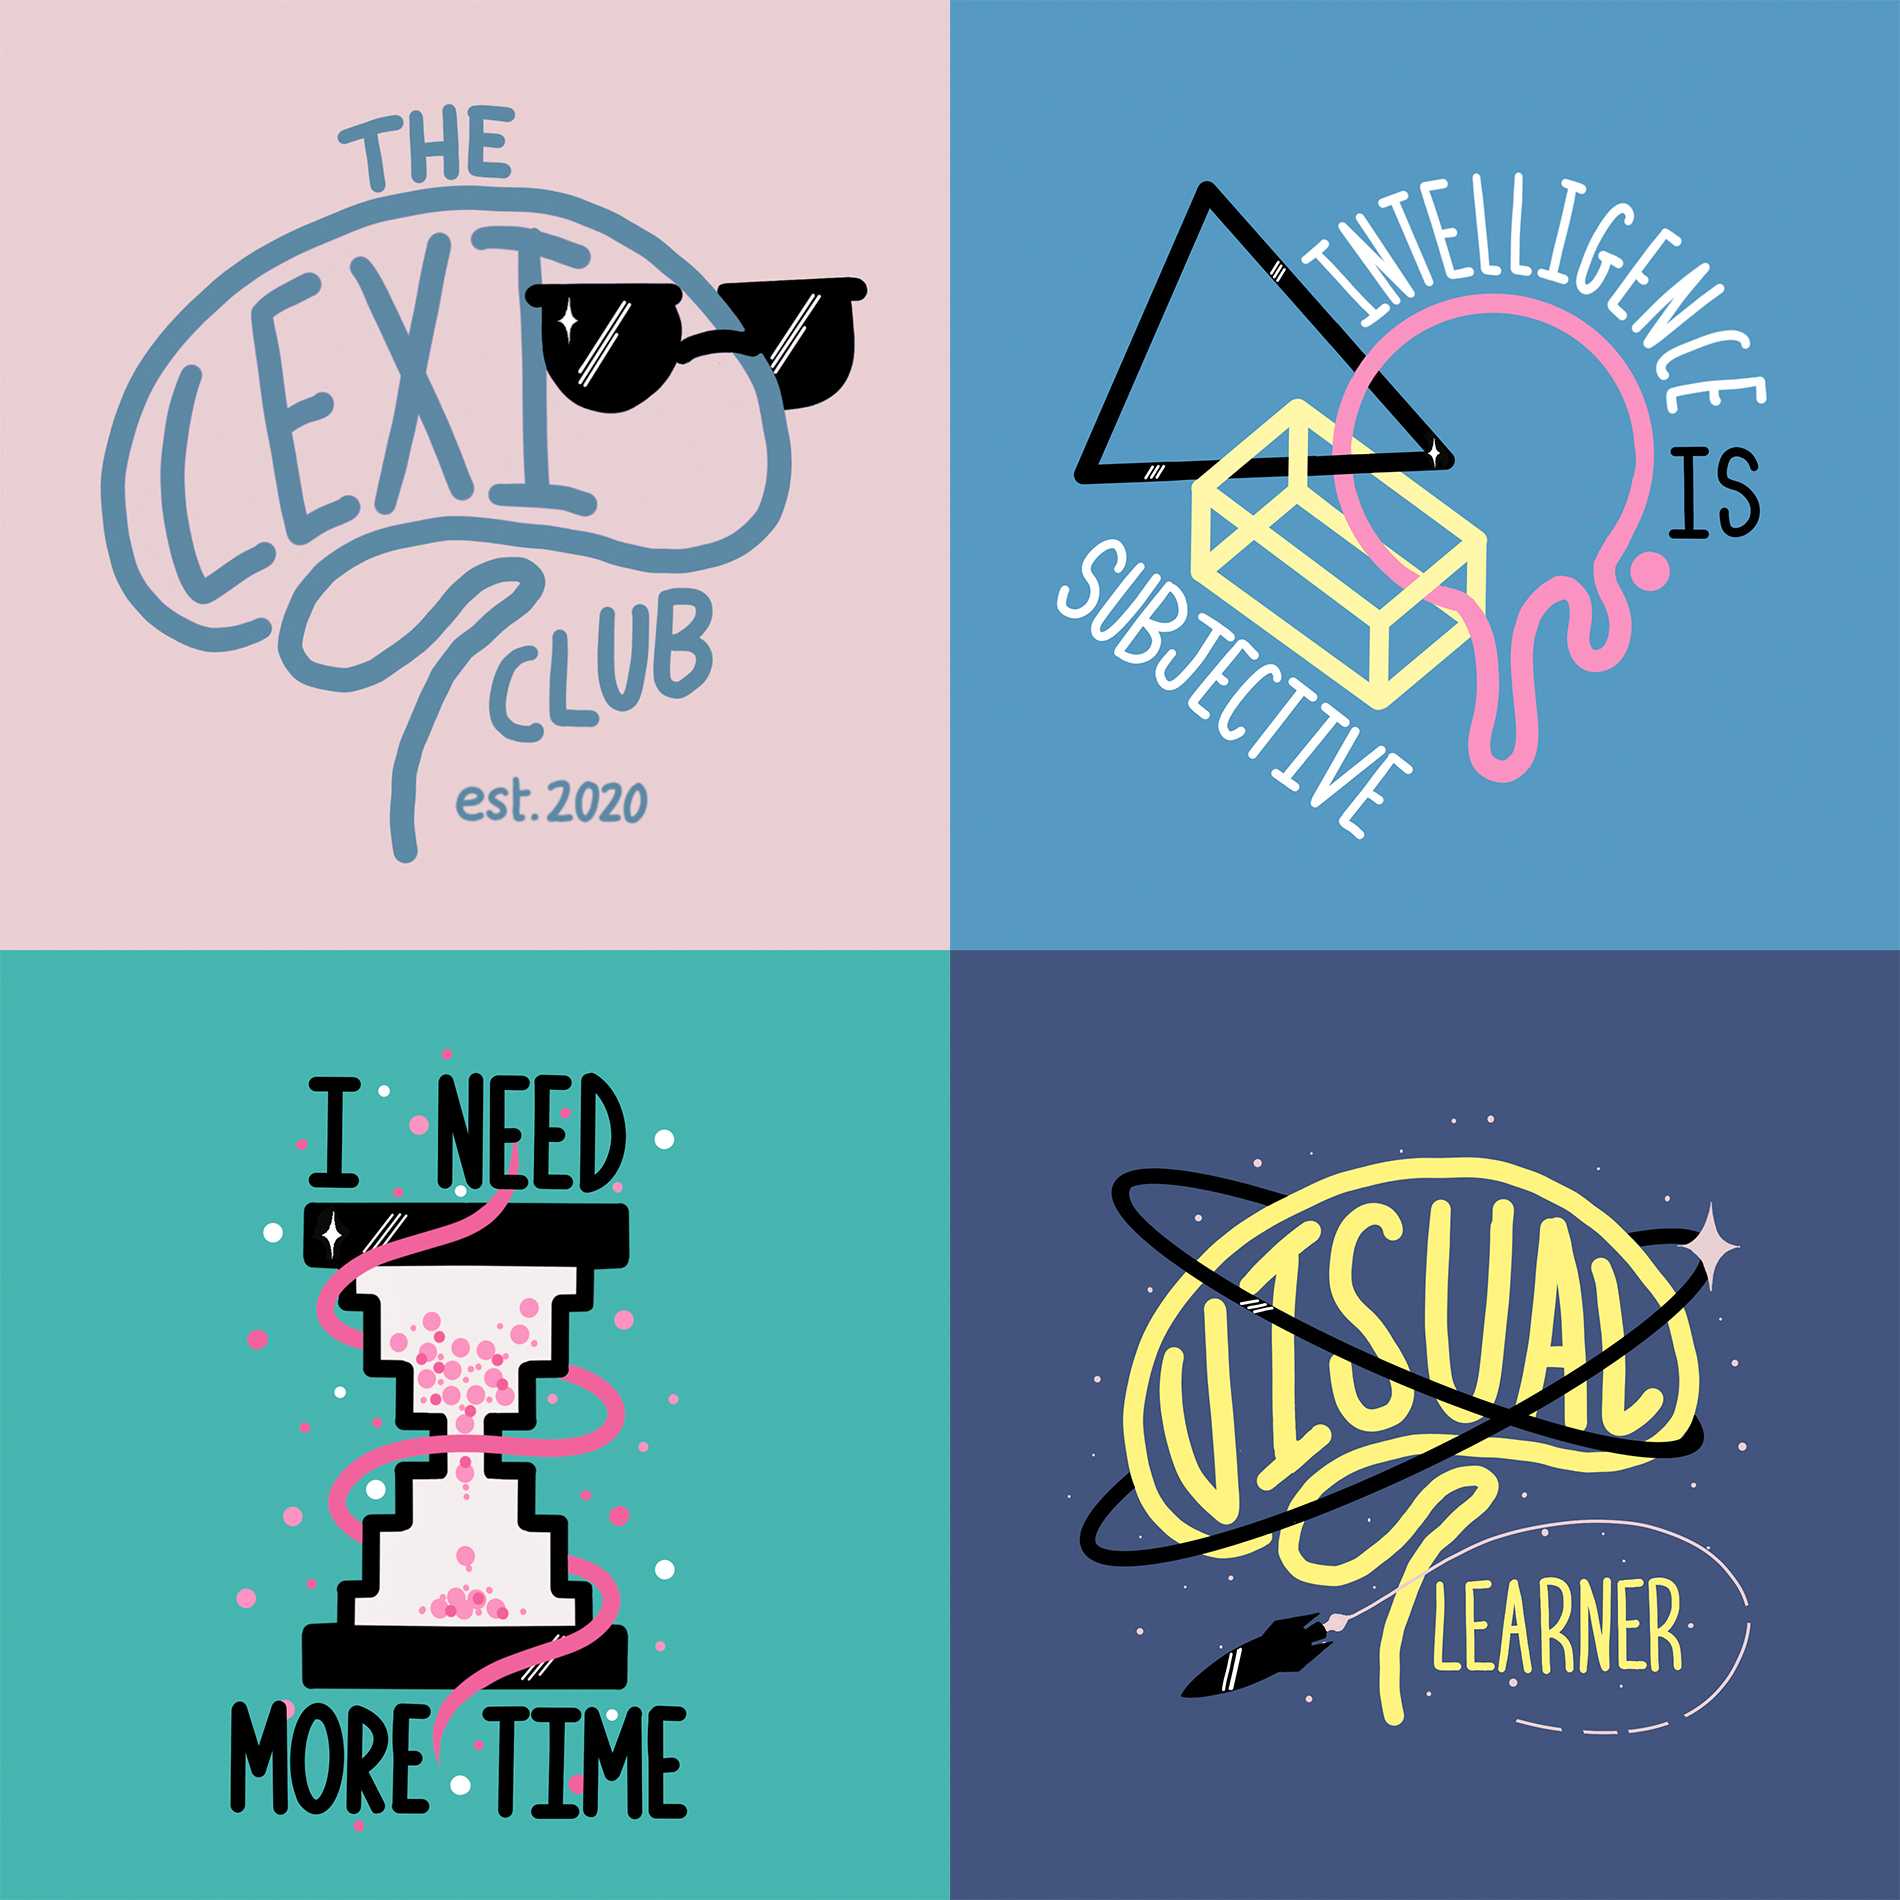 The Lexi Club